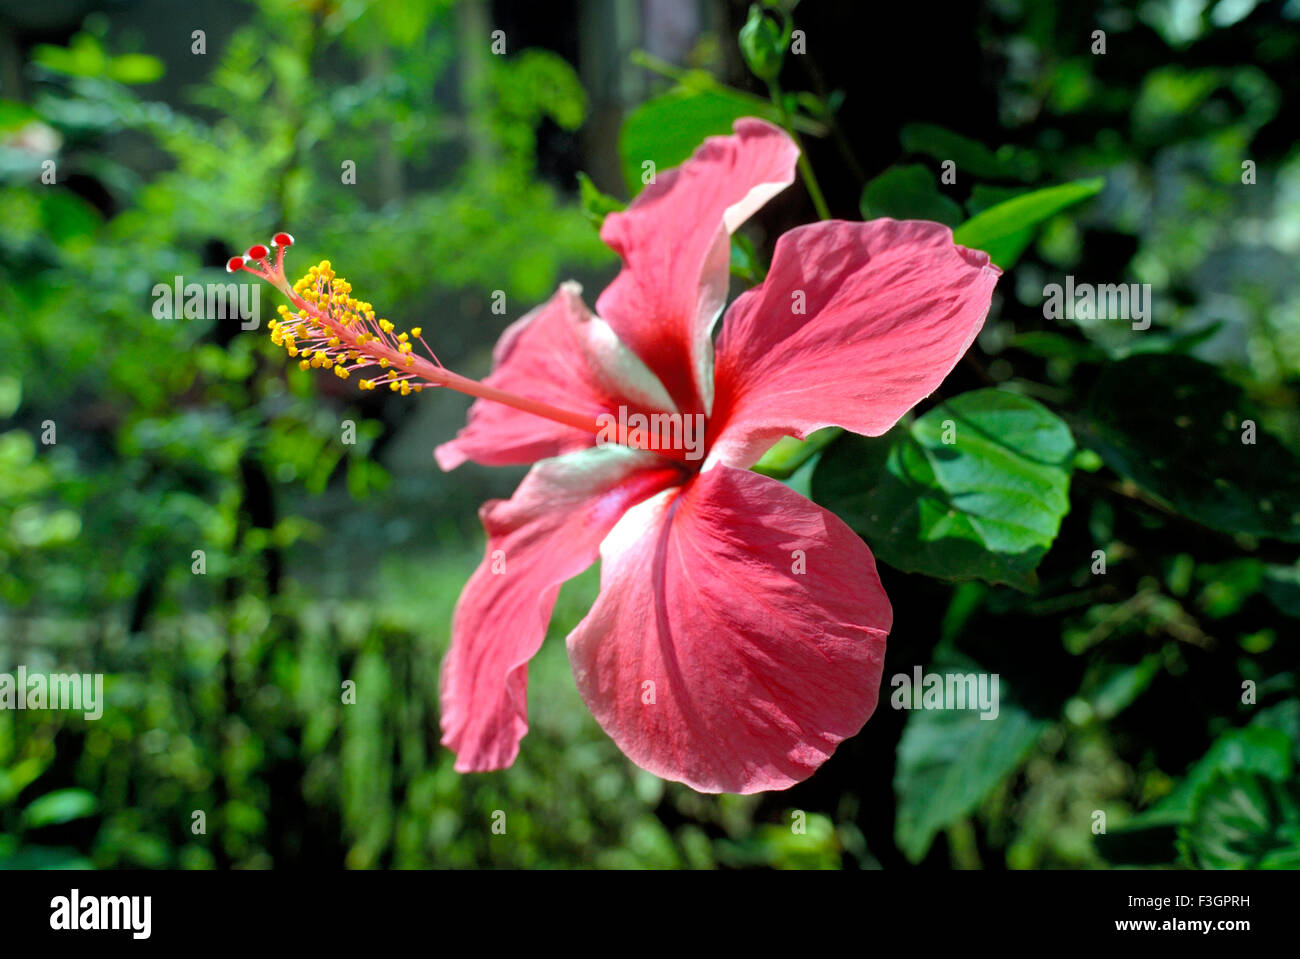 Hibiscus flower, rosemallow flower, Jasvandi flower, Jaswand flower, Maharashtra, India, Asia Stock Photo